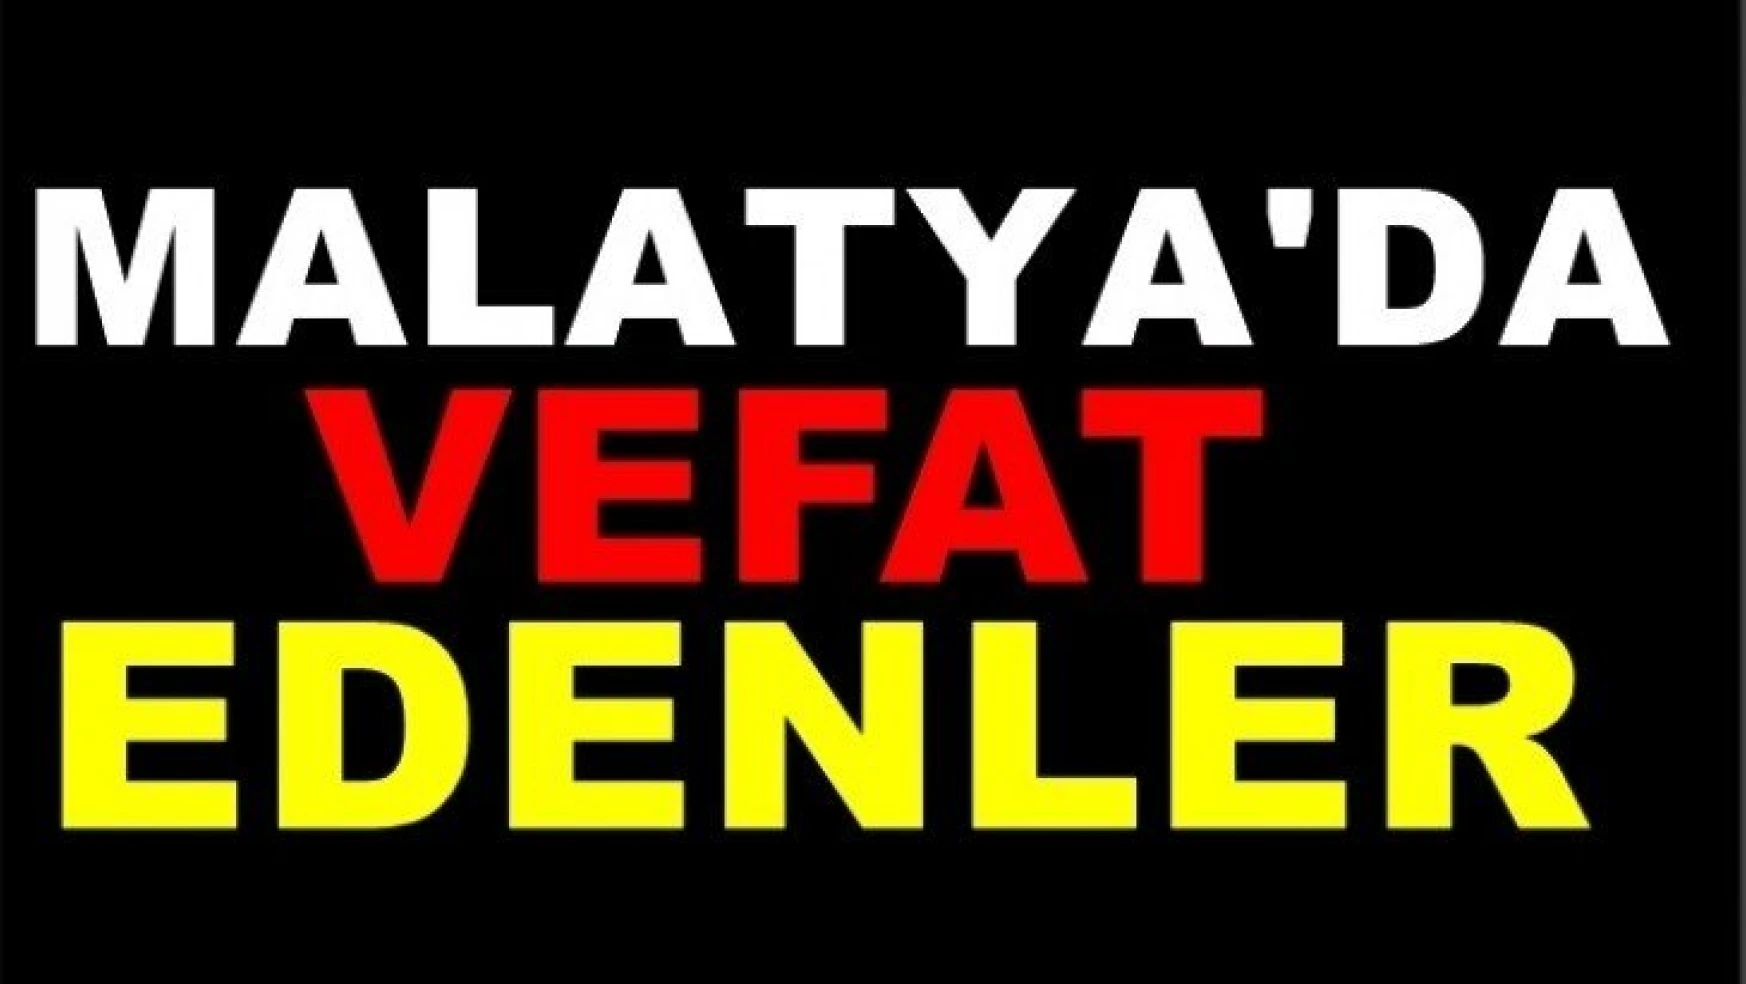 Malatya'da 10 kişi vefat etti